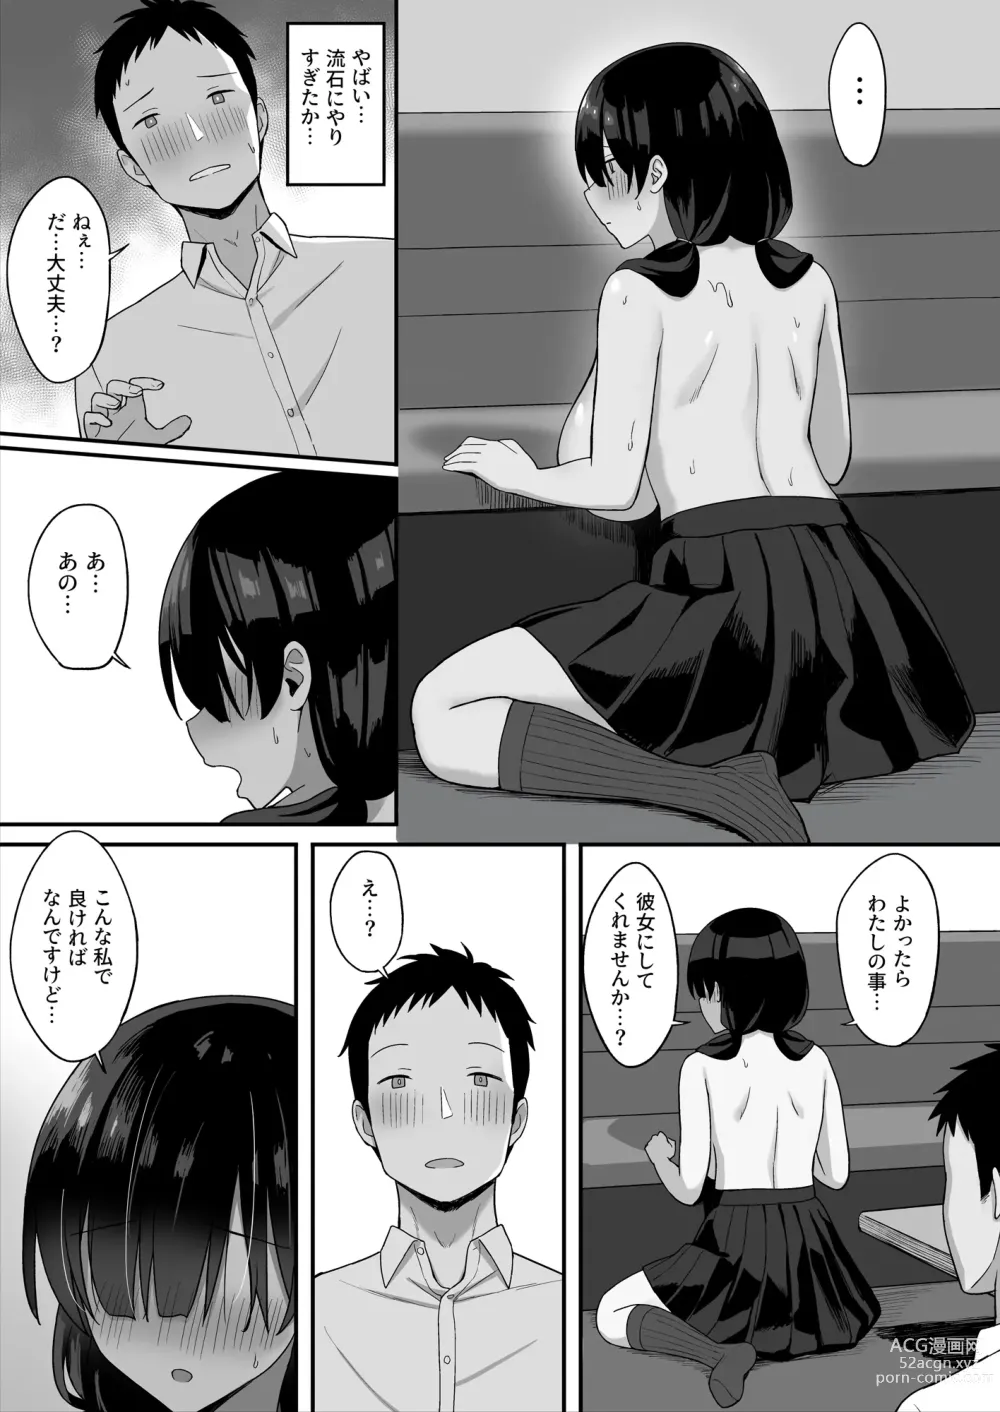 Page 26 of doujinshi 地味巨乳のストーカー女に告白されたのでヤりまくってみた話